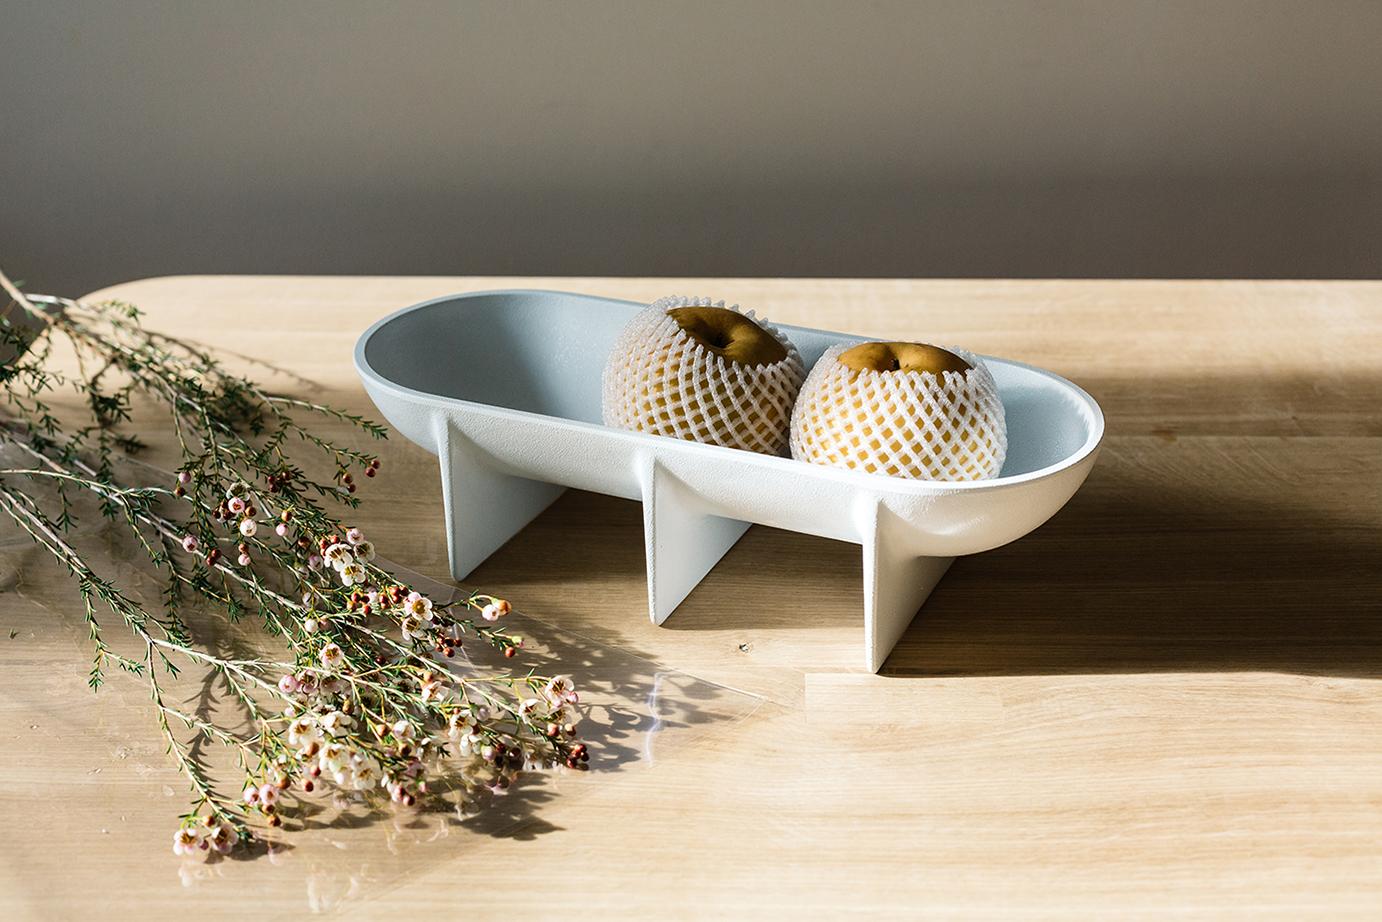 Stellen Sie dieses einzigartige Design auf Ihren Lieblingstisch, um ein perfektes Mittelstück zu schaffen, oder verwenden Sie es in der Küche als besondere Obstschale. 

Die Standschale aus Aluminiumdruckguss hebt sich durch ihre architektonisch